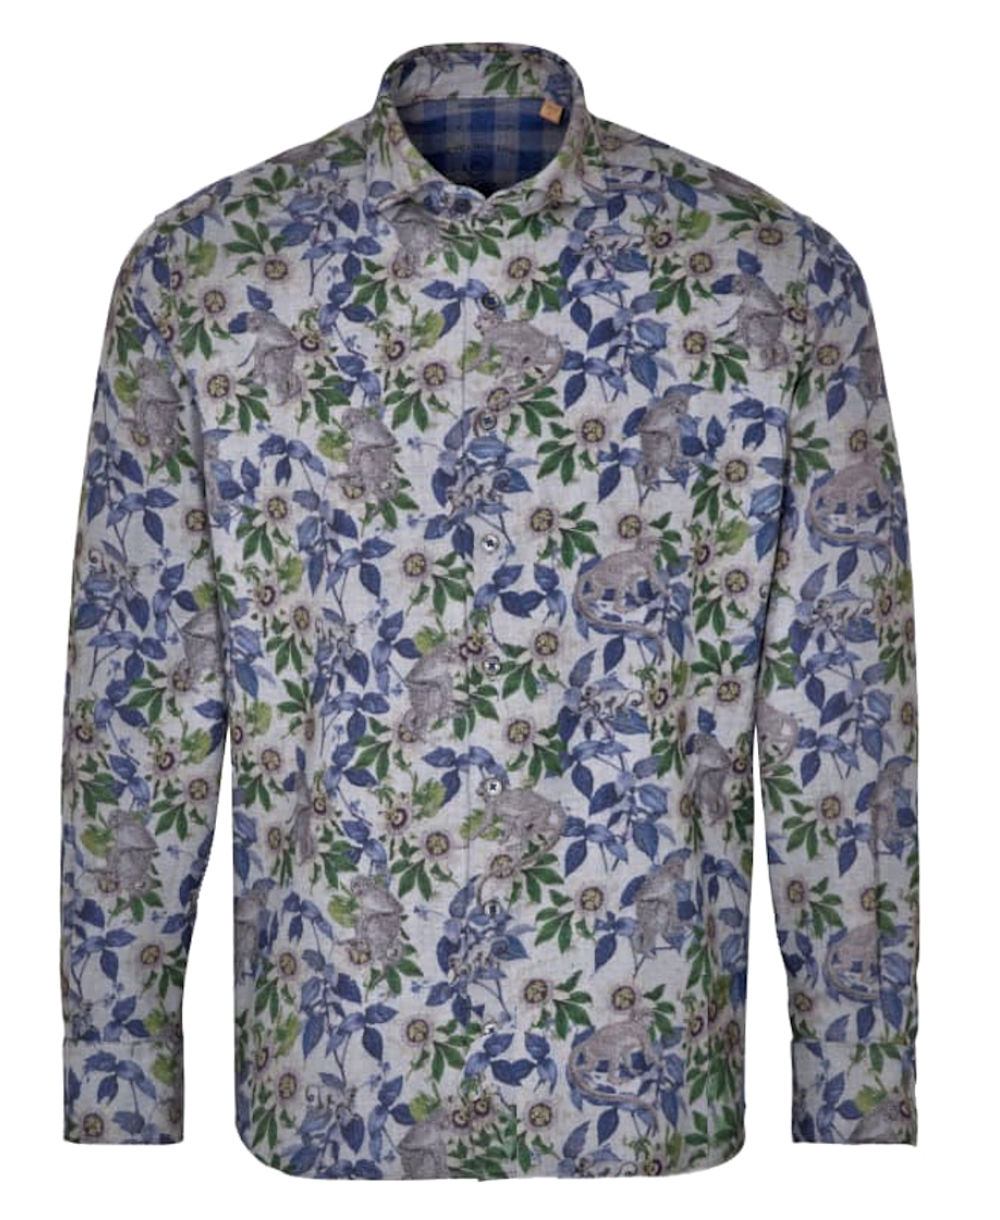 Marken grün grau blau zu UPCYCLING - eterna Dschungel Hochwertige fairen Oxford führender Herrenmode Langarmhemd Print SHIRT